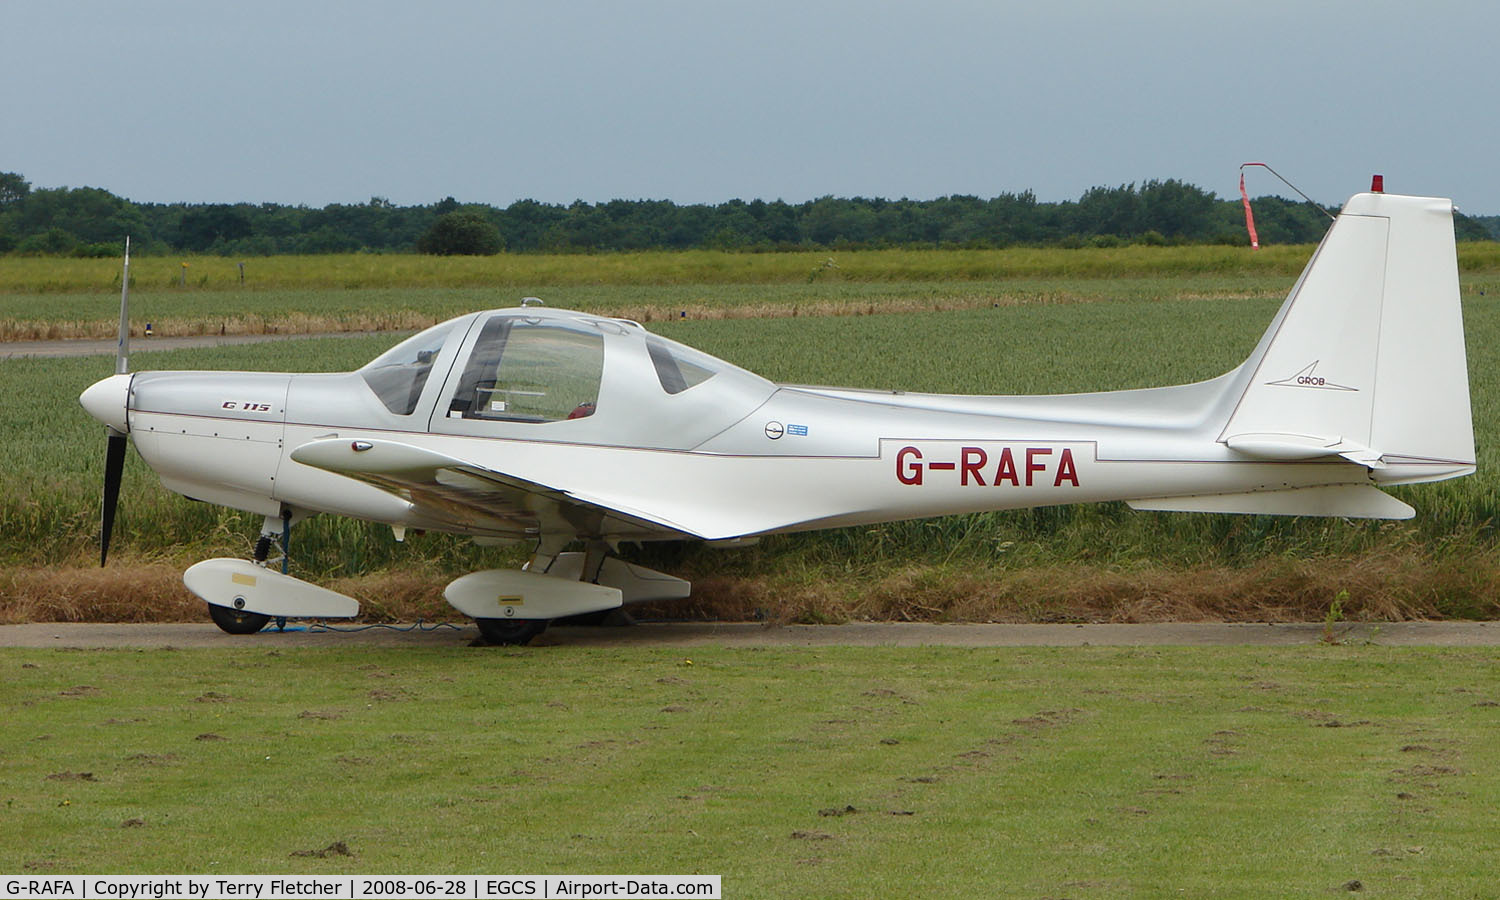 G-RAFA, 1989 Grob G-115 C/N 8081, Grob 115 at Sturgate